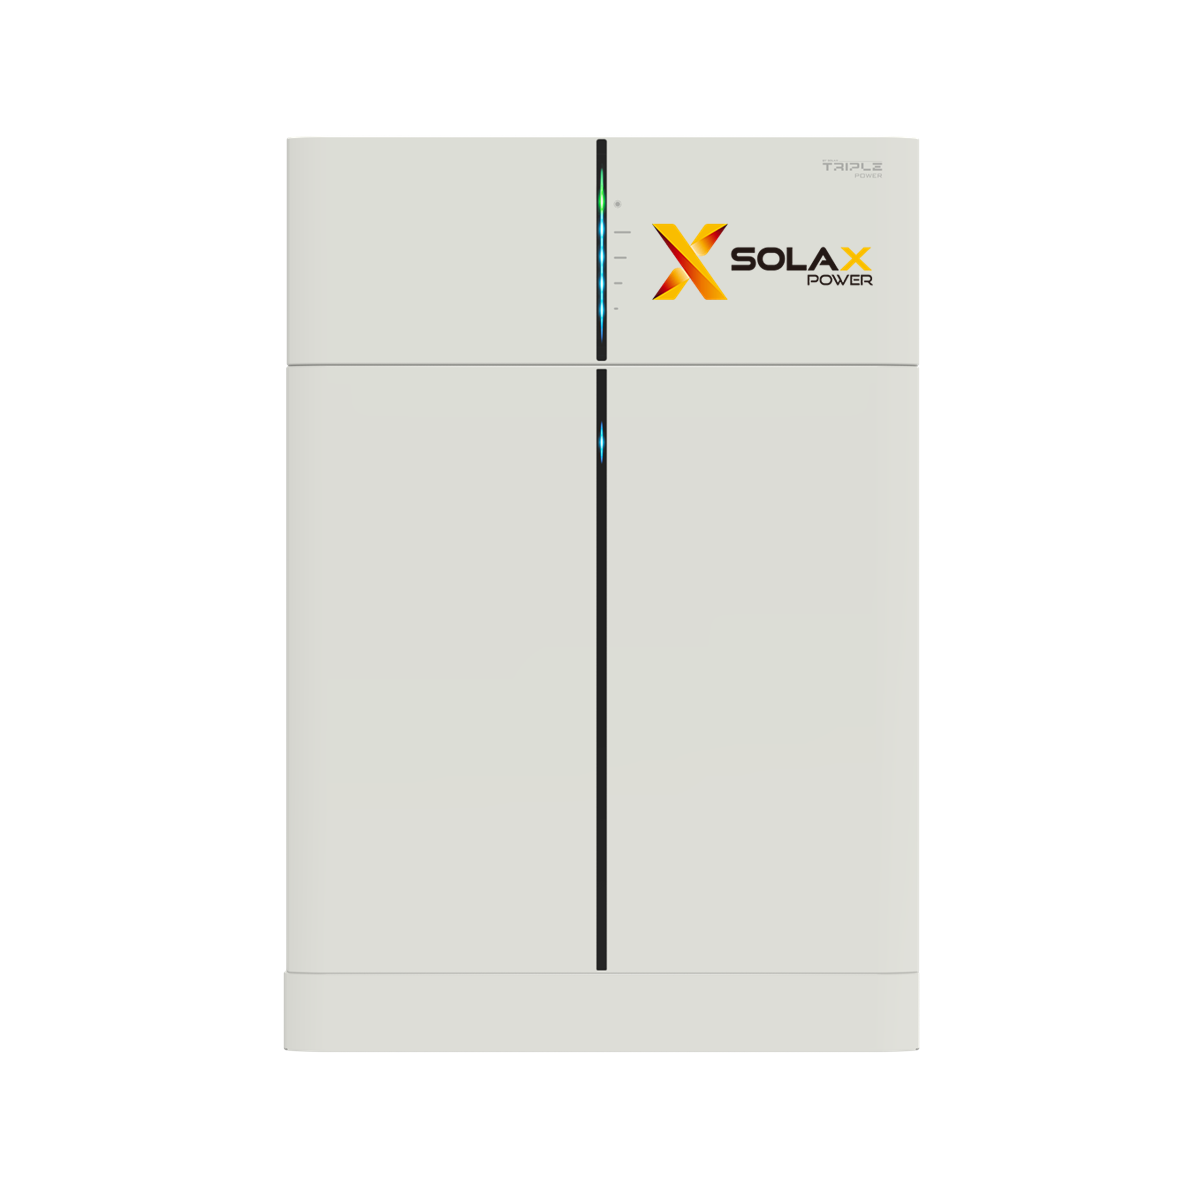 SOLAX -3,1 kWh T3.0 POWER PACK für Kleinkraftwerke